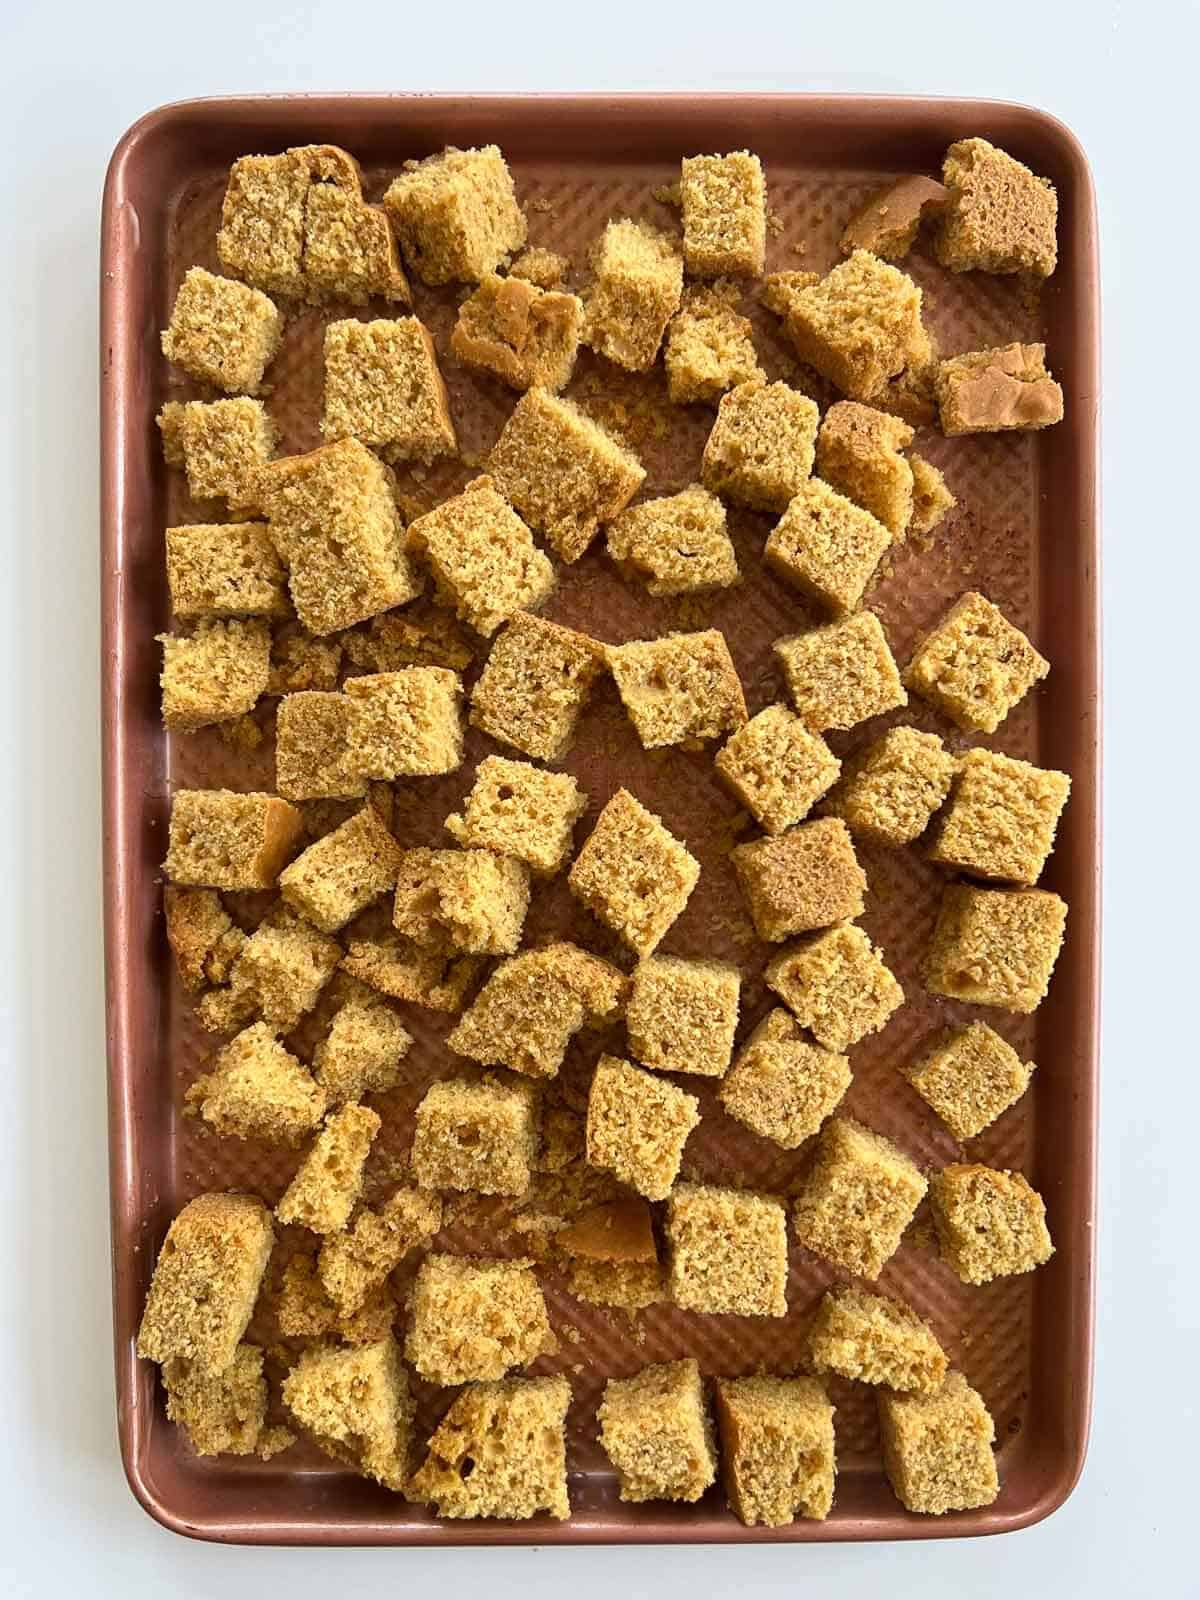 cornbread cubes in baking sheet.